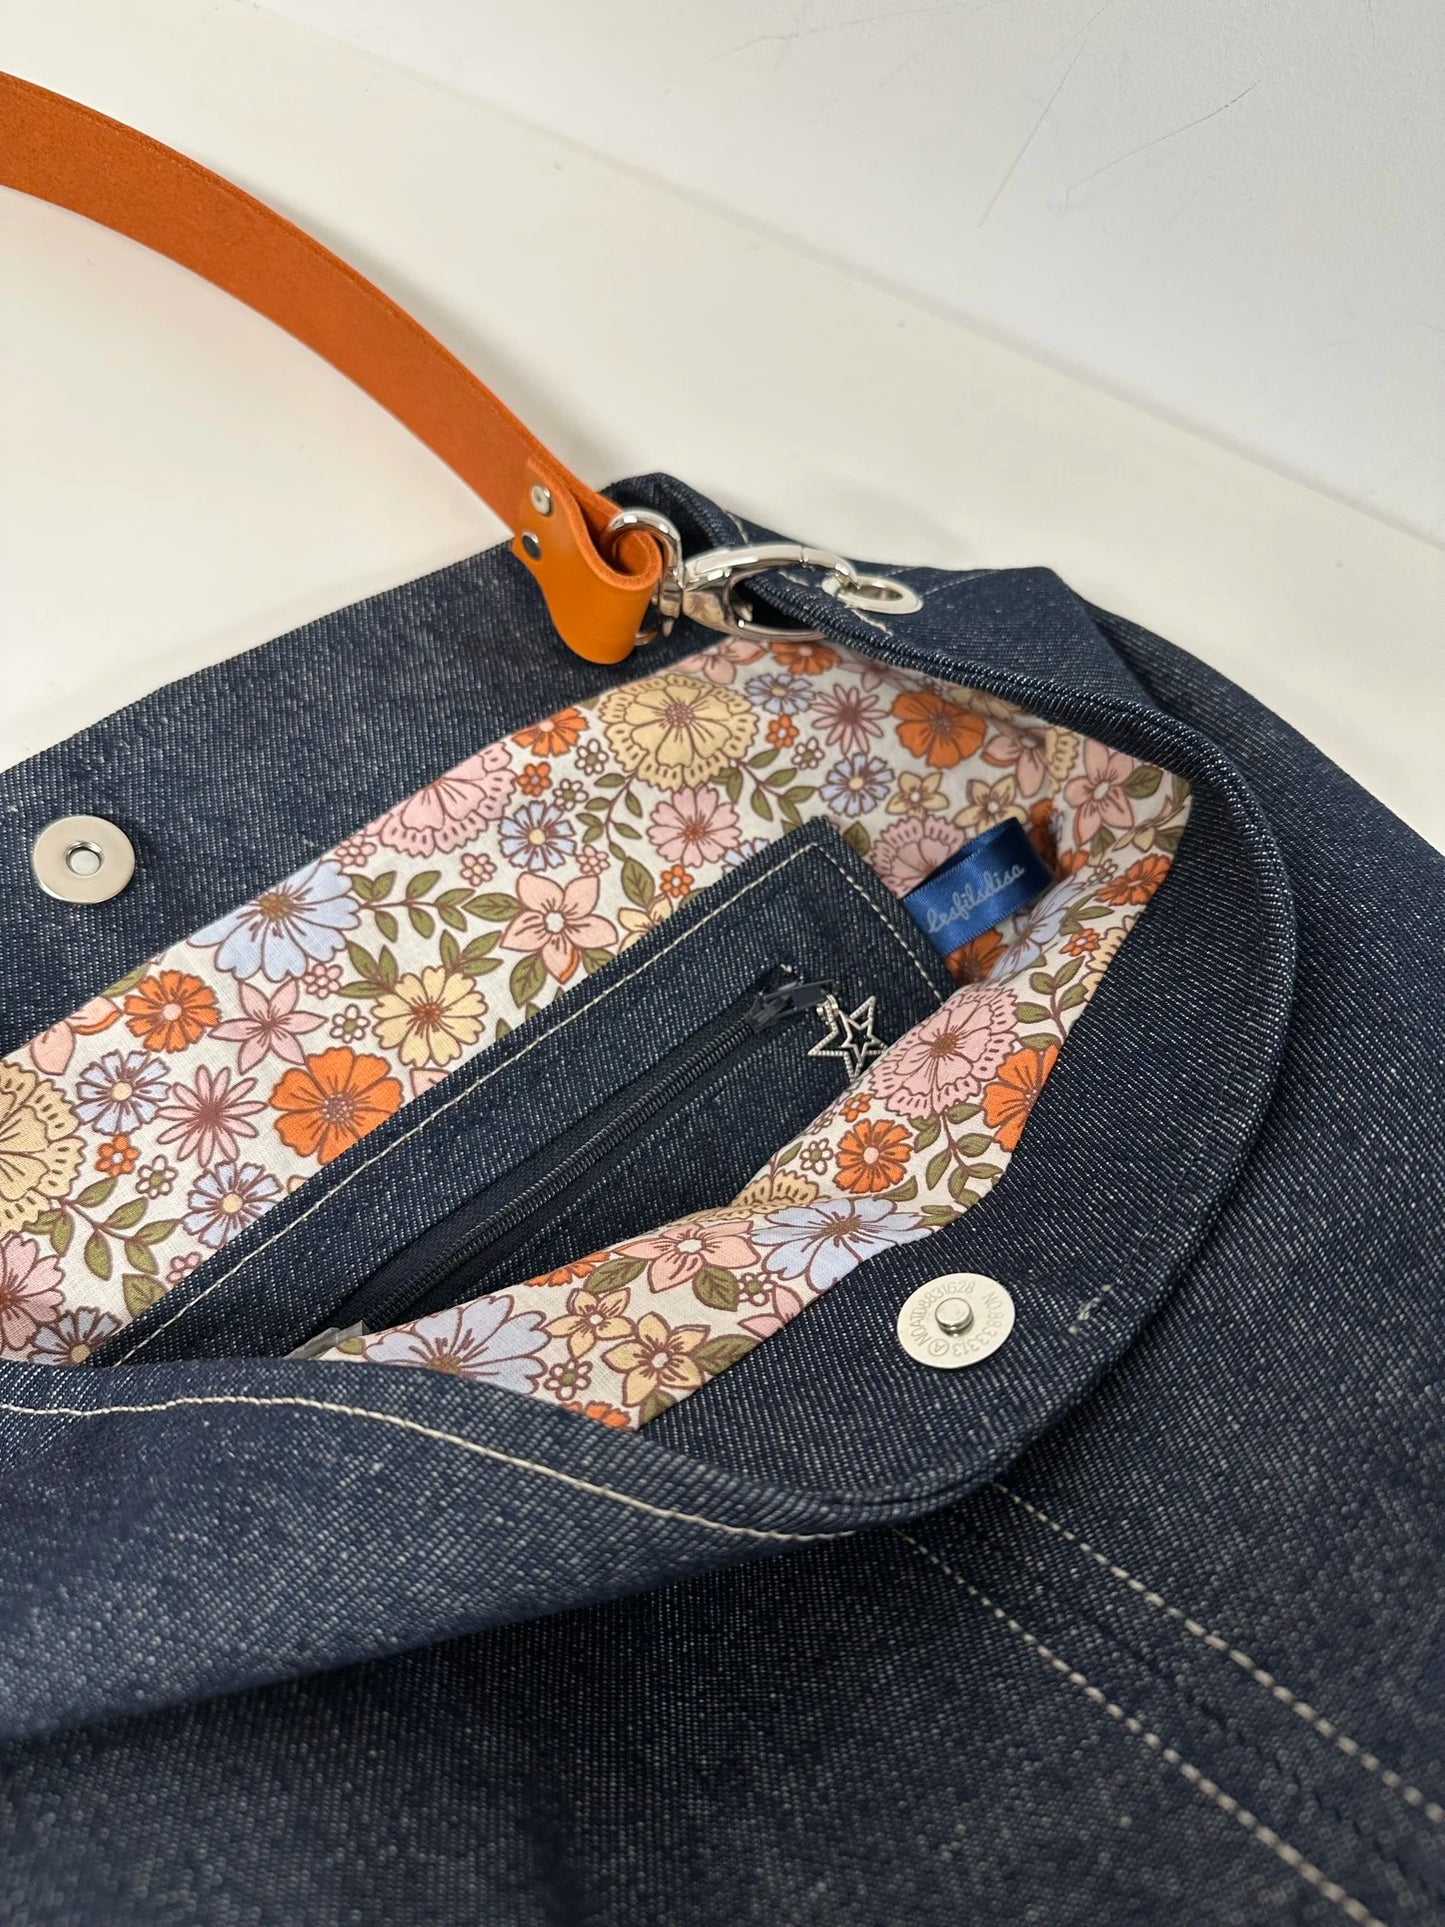 La poche zippée du sac hobo en denim et son anse en cuir orange .